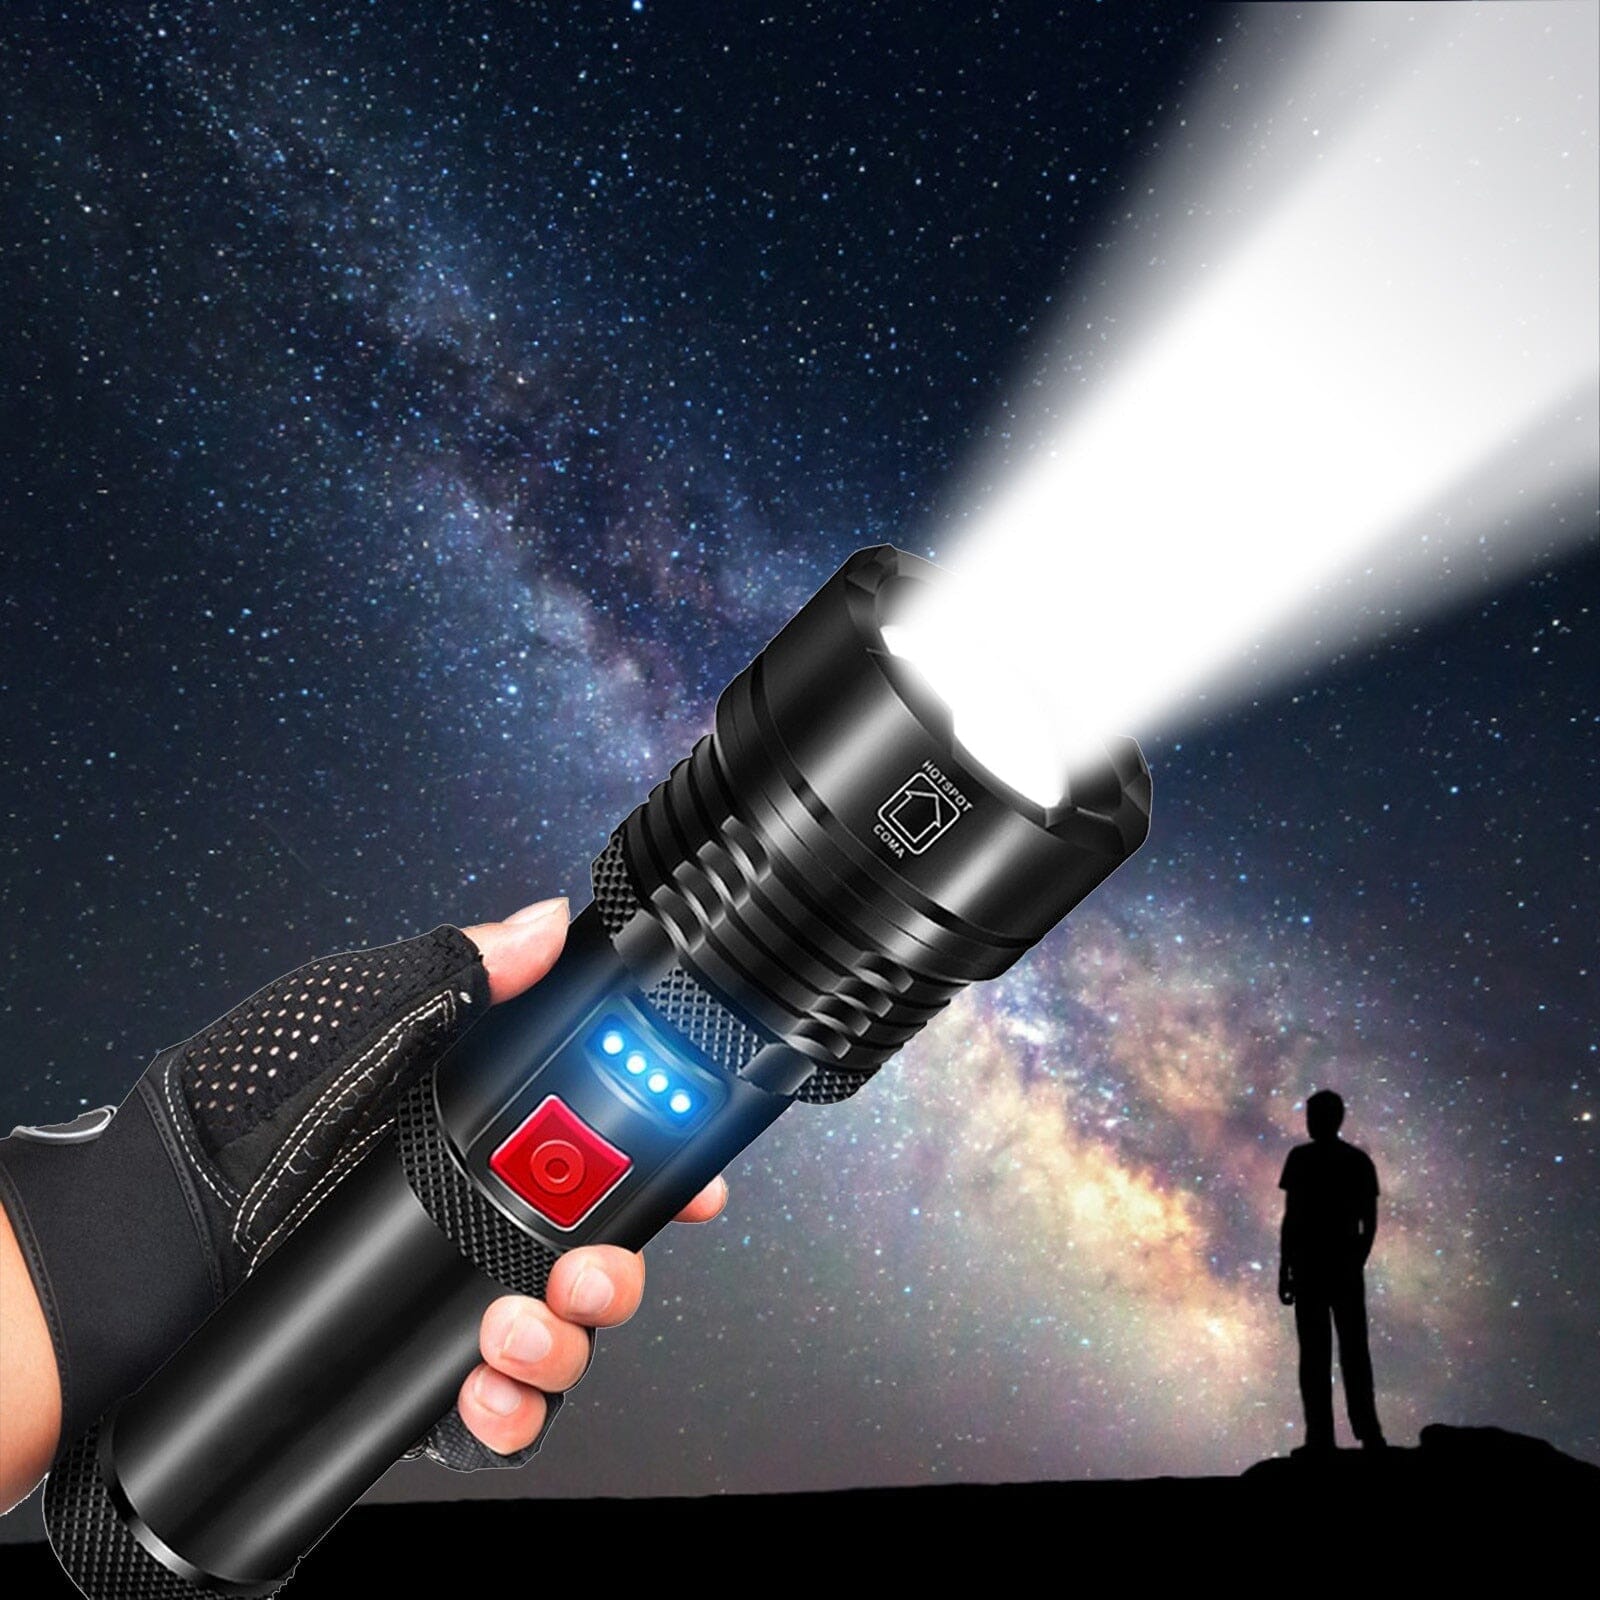 Lanterna A prova d'água Laser Pro Titanium® - Uma das mais Potente do Mundo [50% OFF] SOMENTE HOJE!